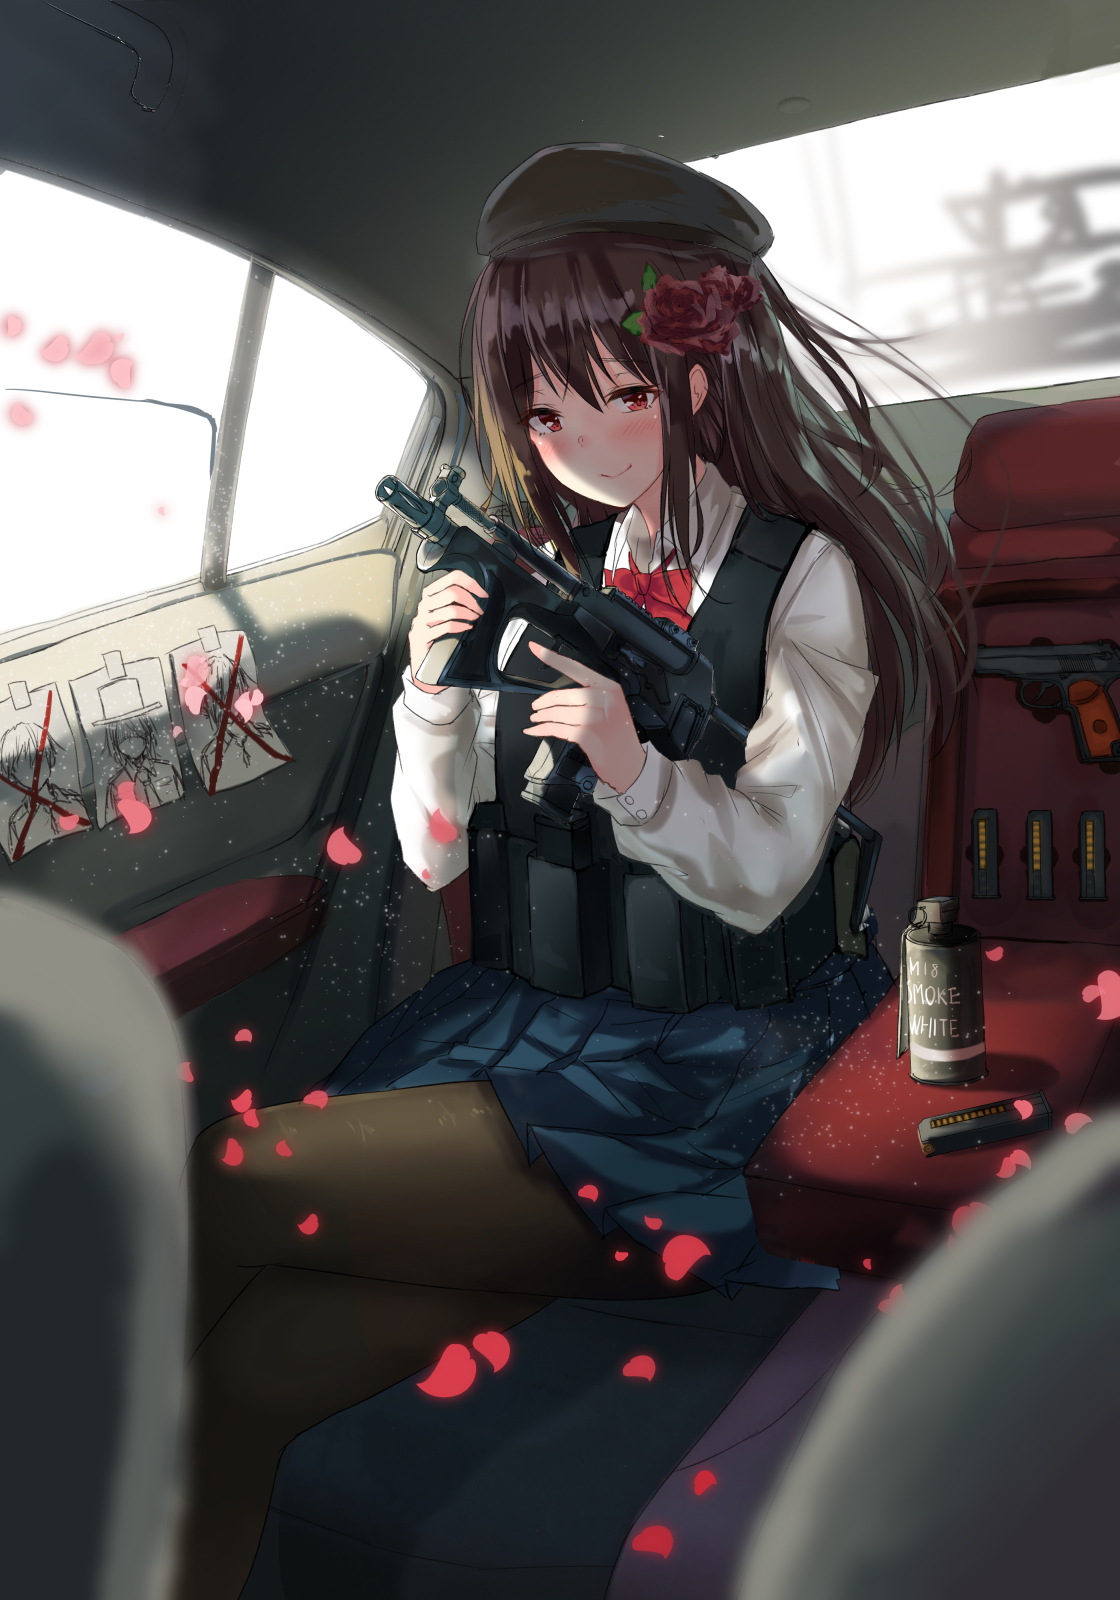 Anime 1120x1600 Karo-chan anime girls anime brunette red eyes weapon smiling car interior gun